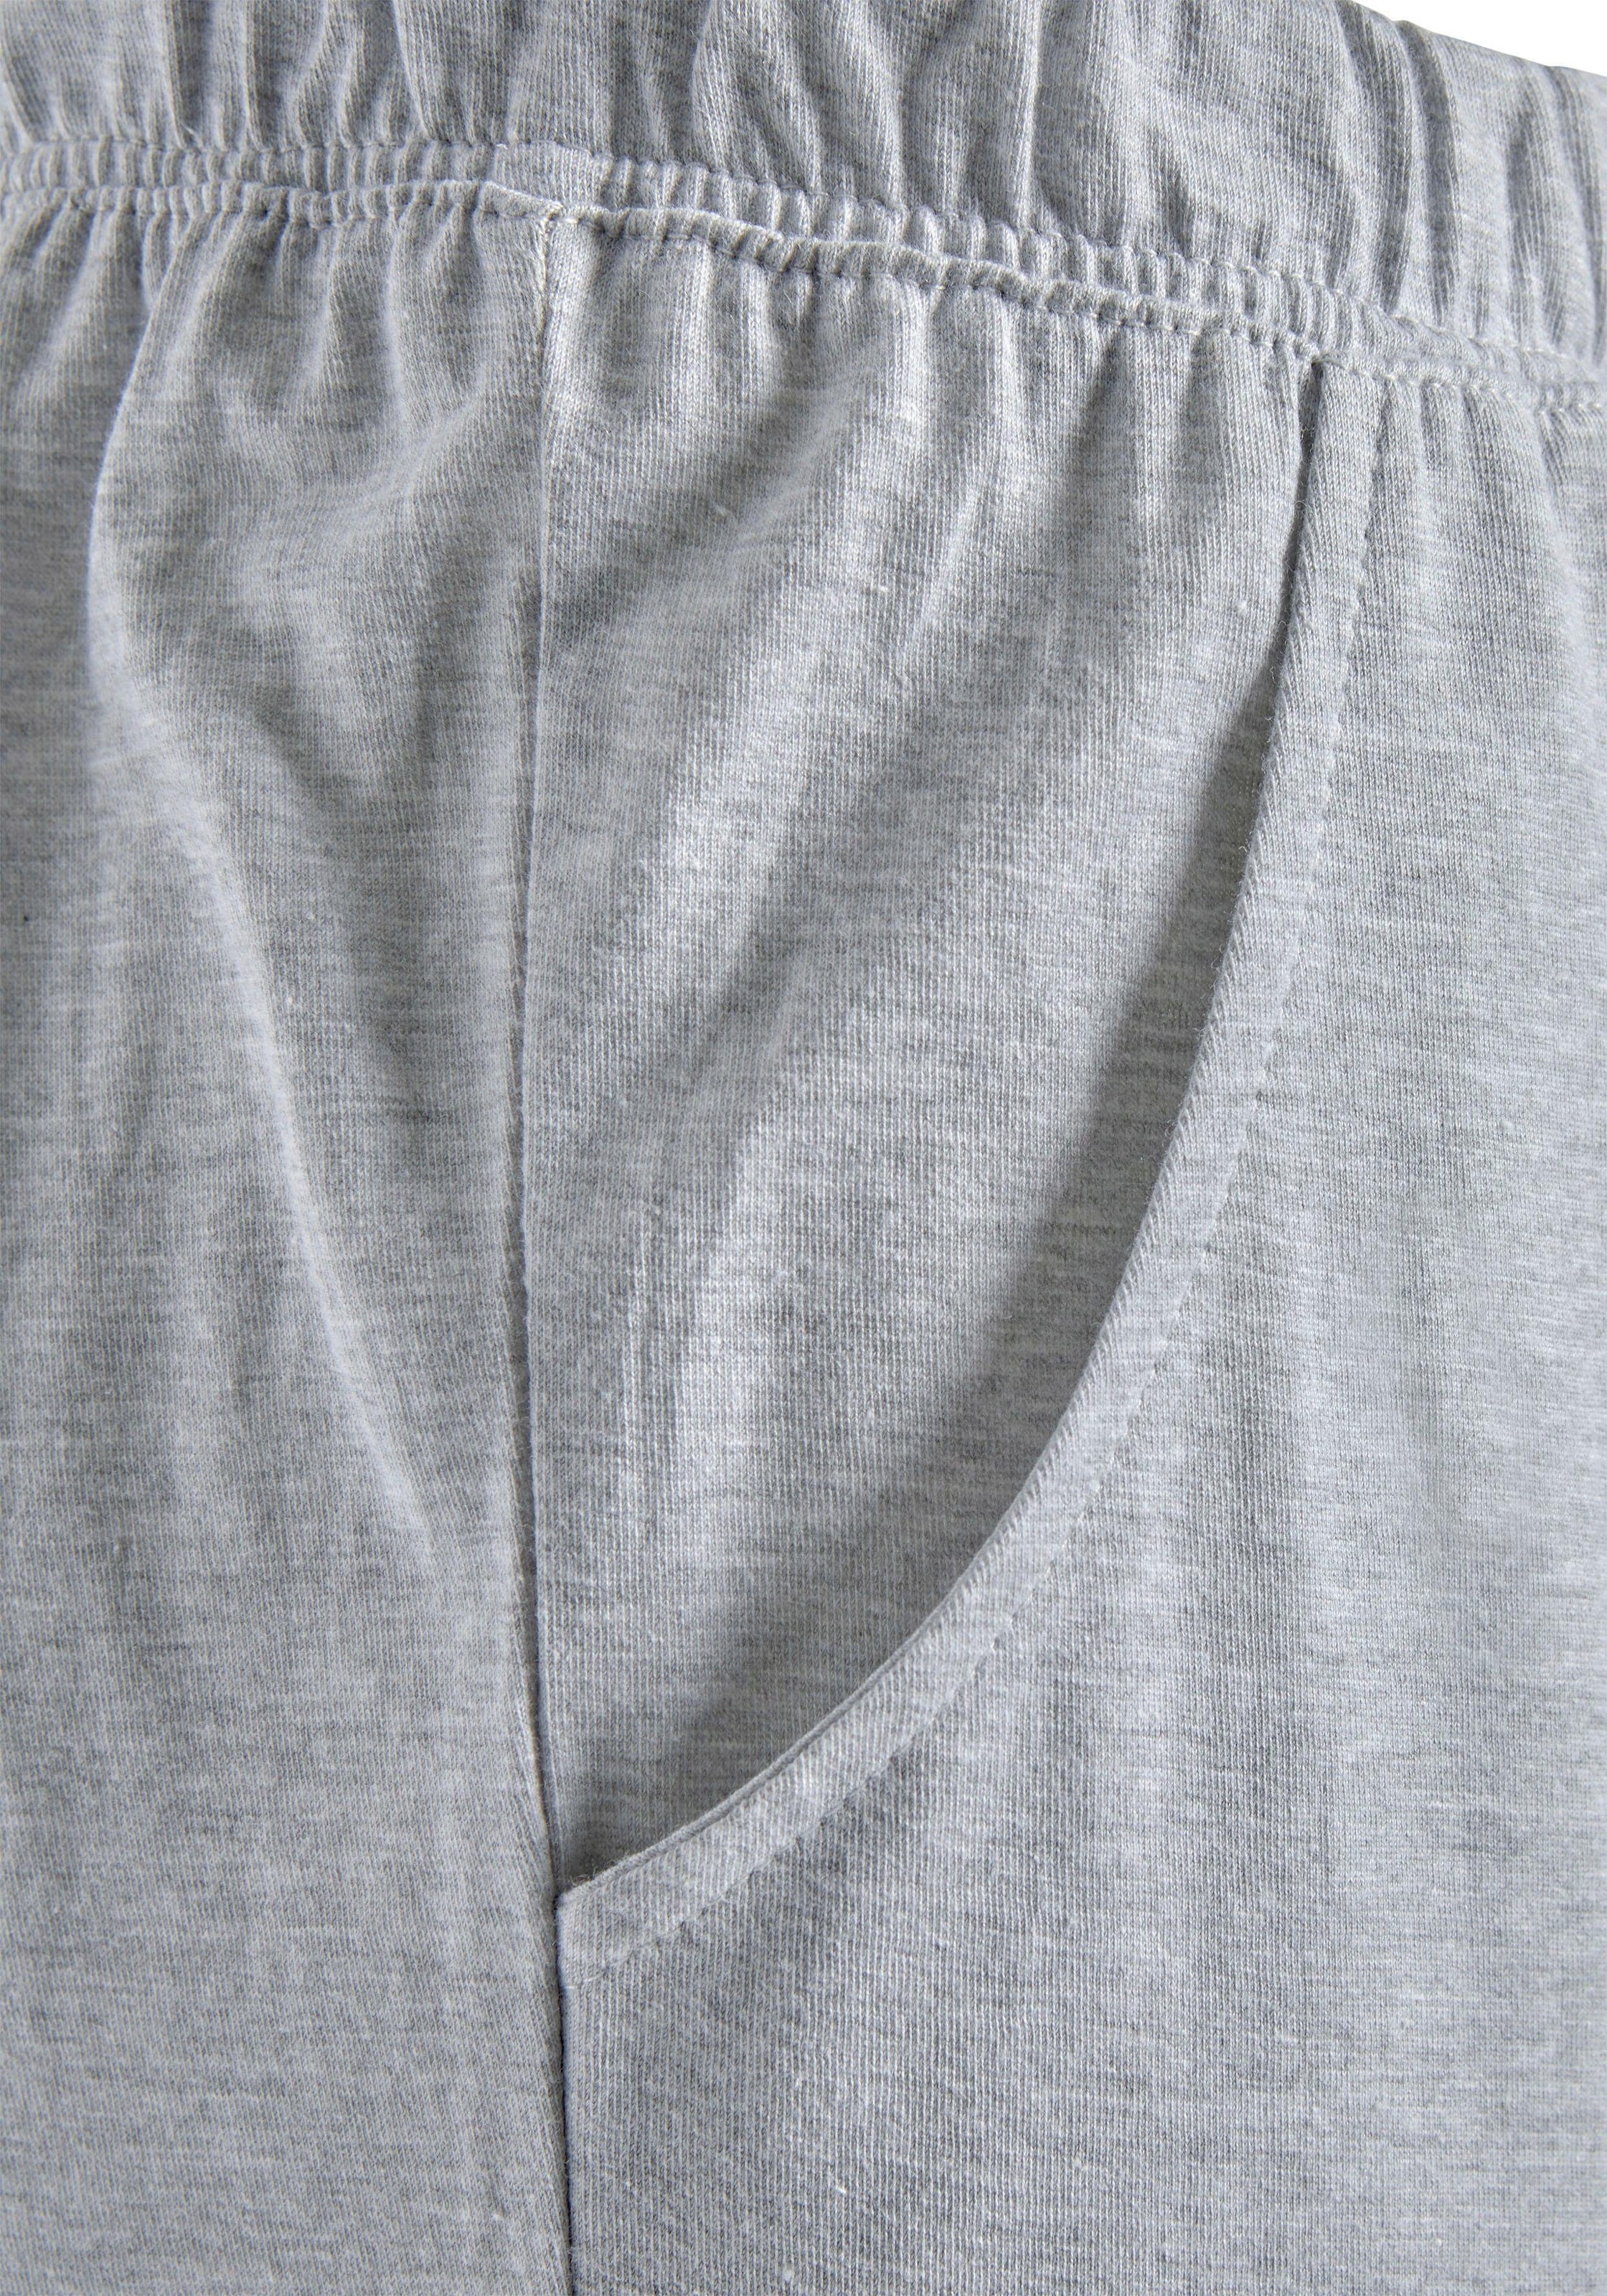 Arizona Pyjama, (4 tlg., 2 Stück), in melierter Optik